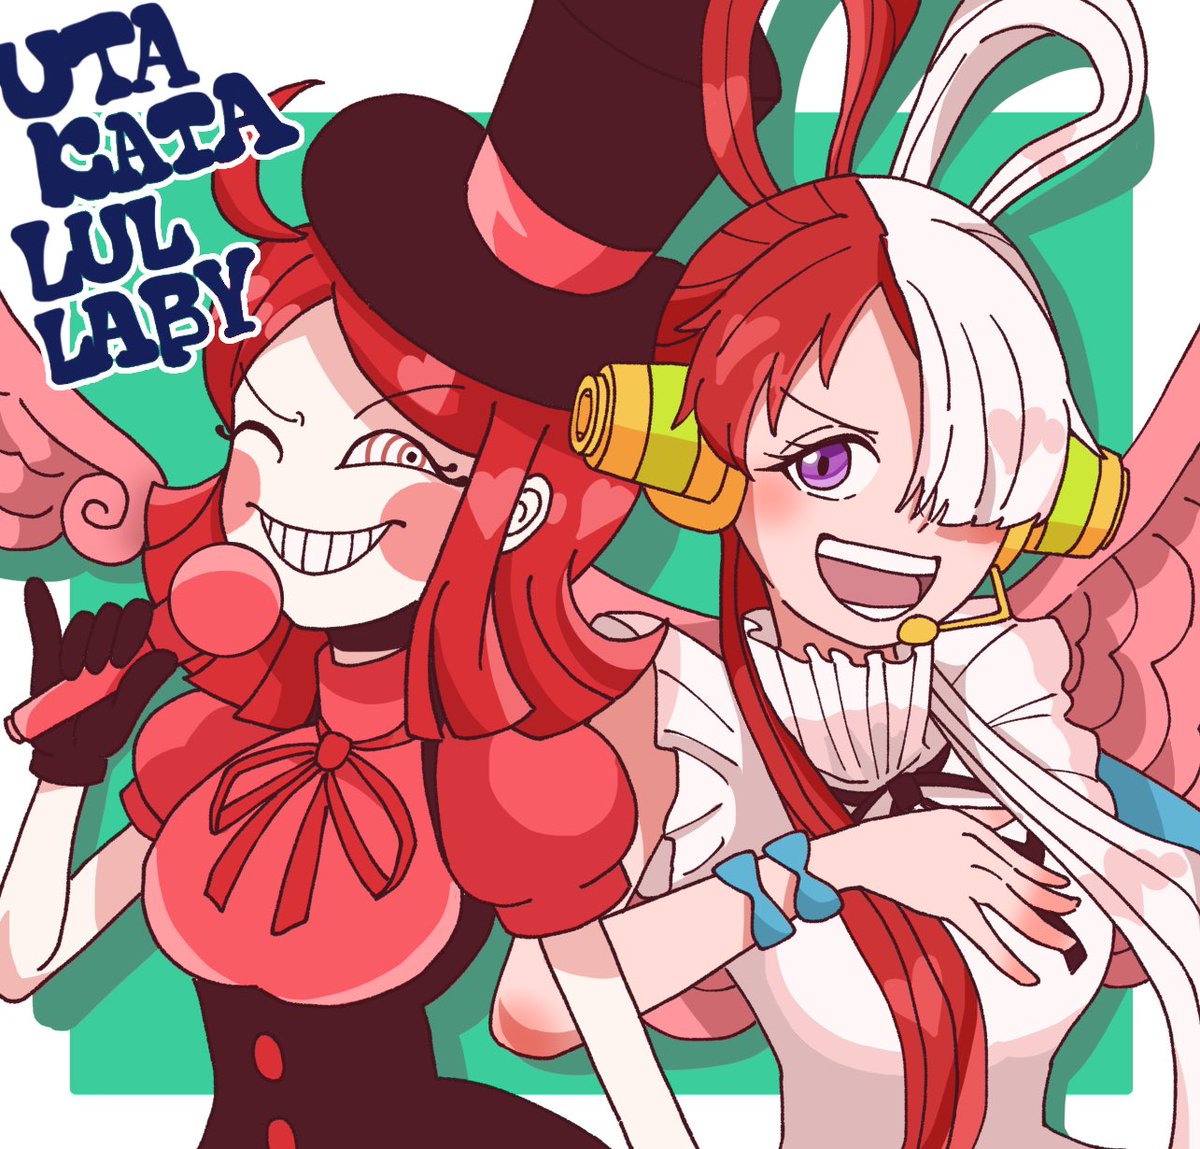 split-color hair 2girls red hair multiple girls hair over one eye microphone white hair  illustration images